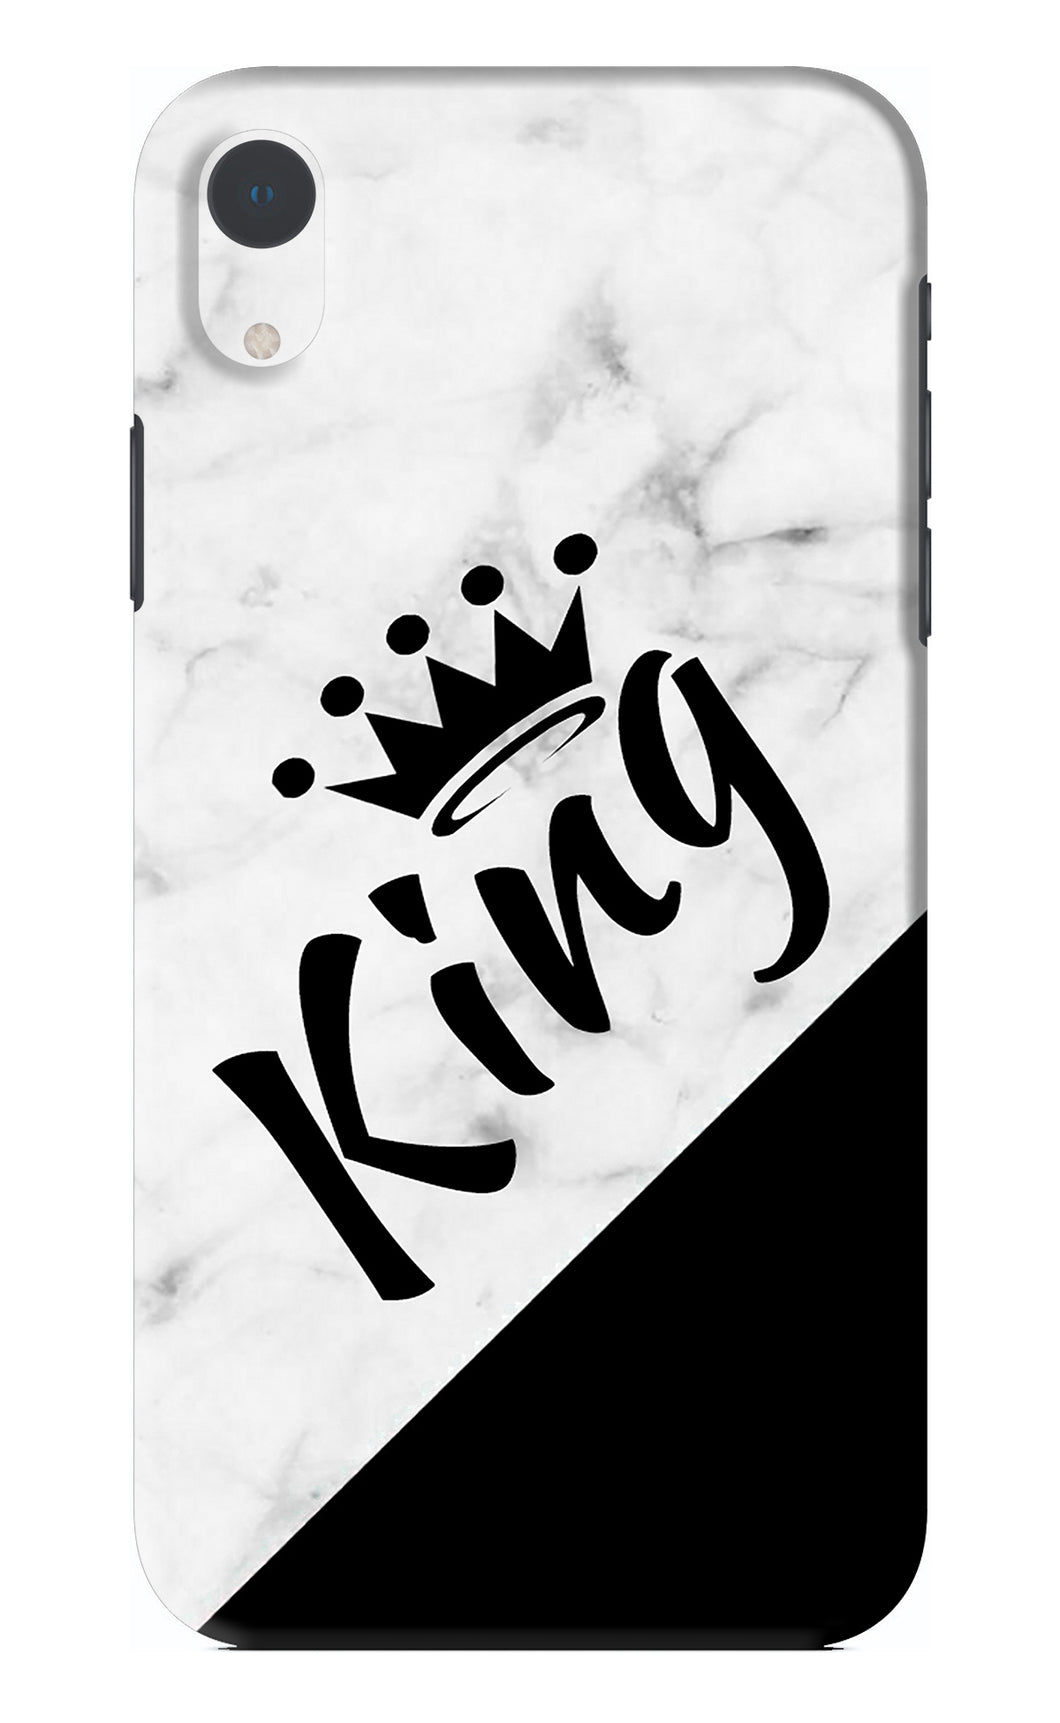 King iPhone XR Back Skin Wrap